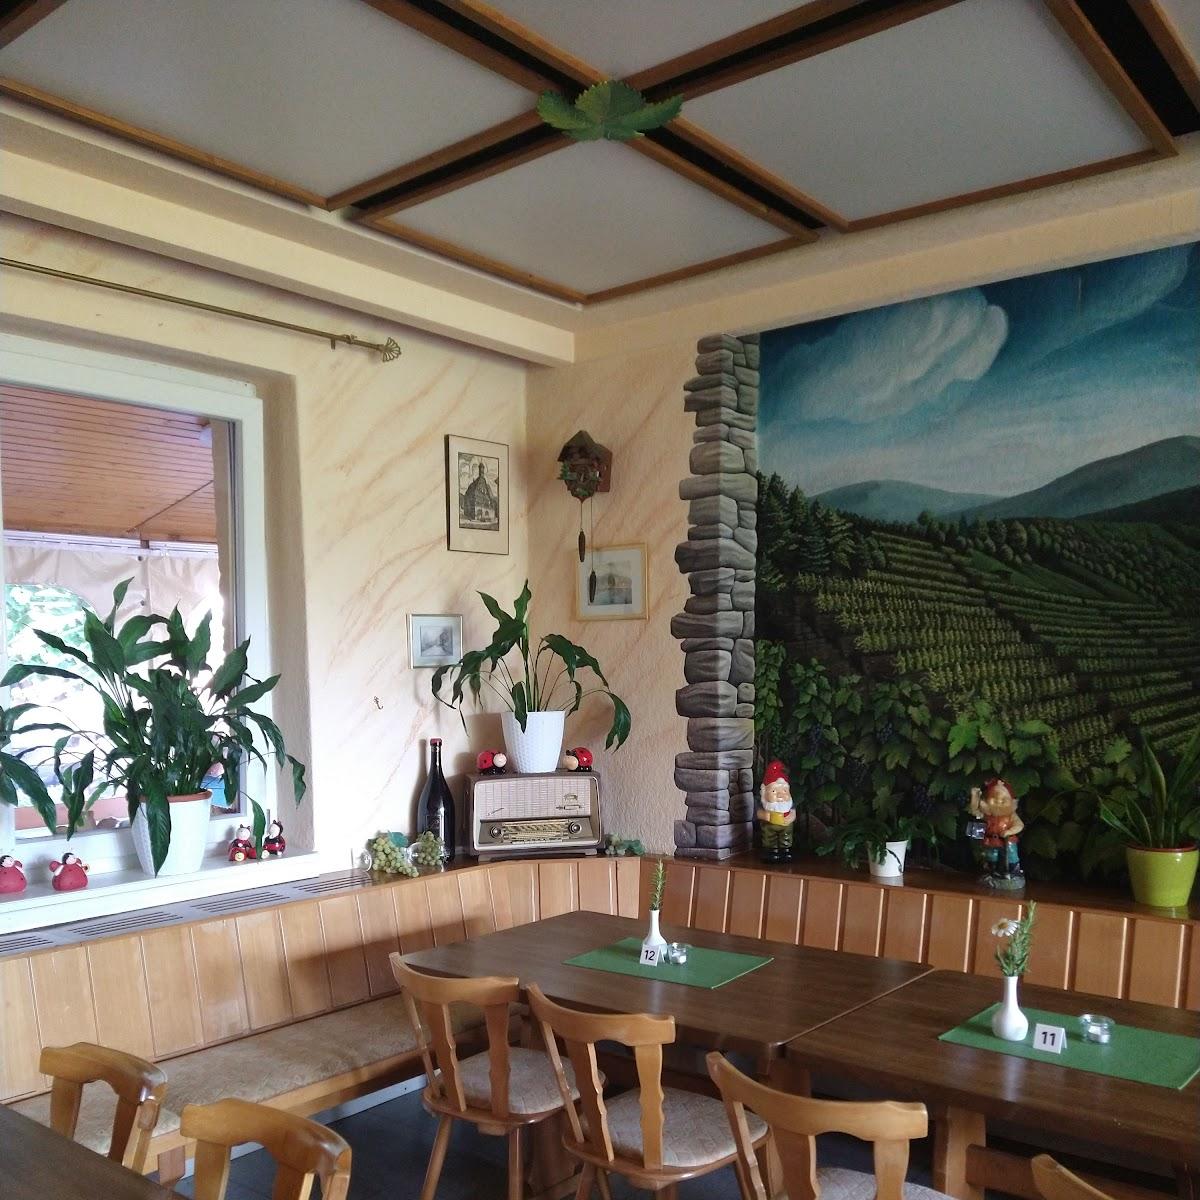 Restaurant "Weinstube Zur Traube" in Erlenbach am Main